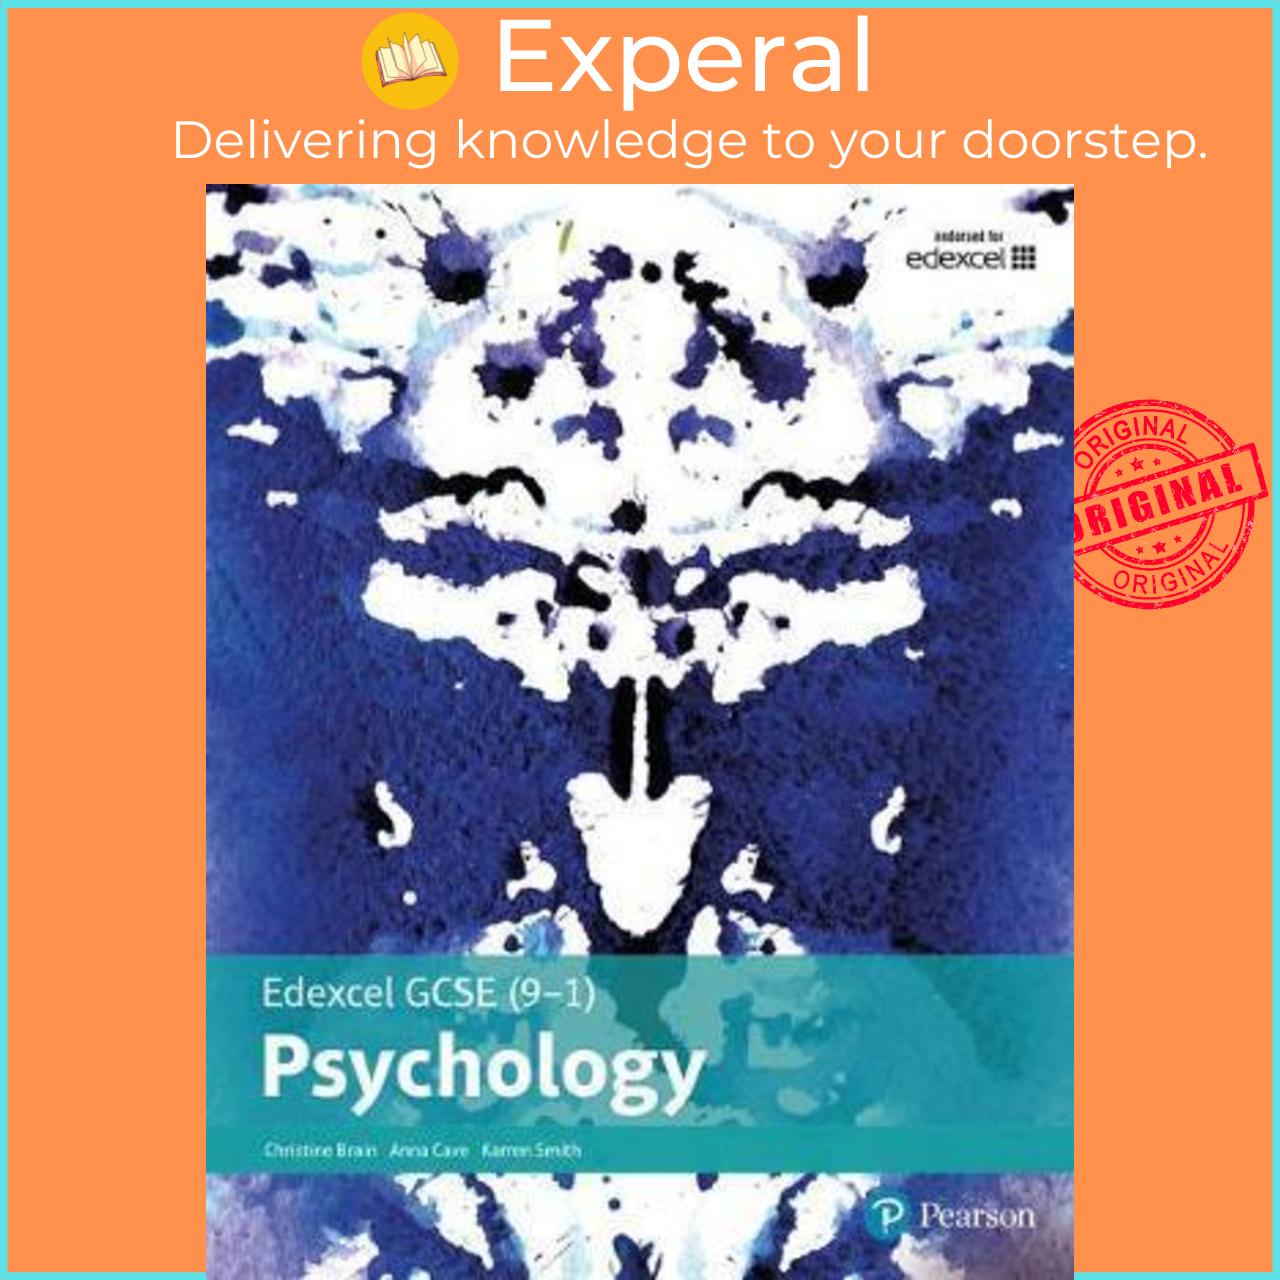 Sách - Edexcel GCSE (9-1) Psychology Student Book by Christine Brain (UK edition, paperback)